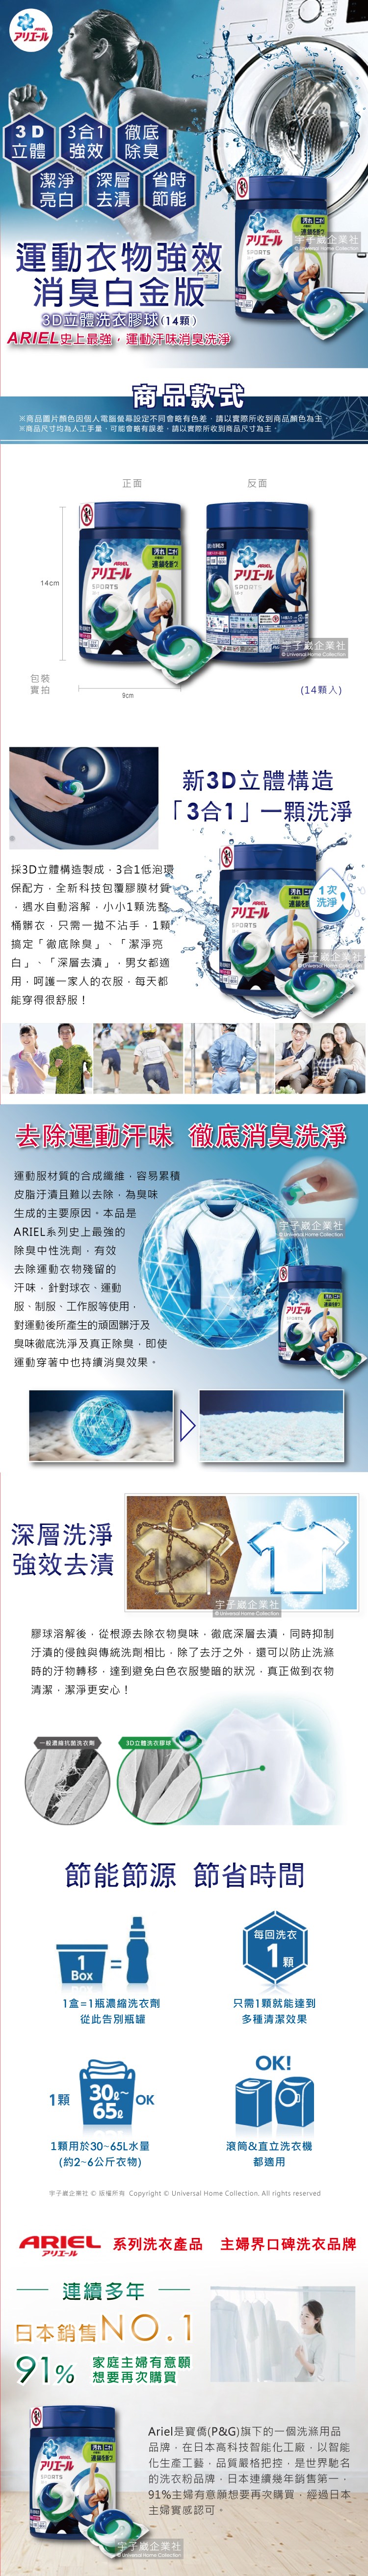 日本P&G-Ariel3D立體洗衣凝膠球-運動消臭白金版(14顆罐裝)介紹圖